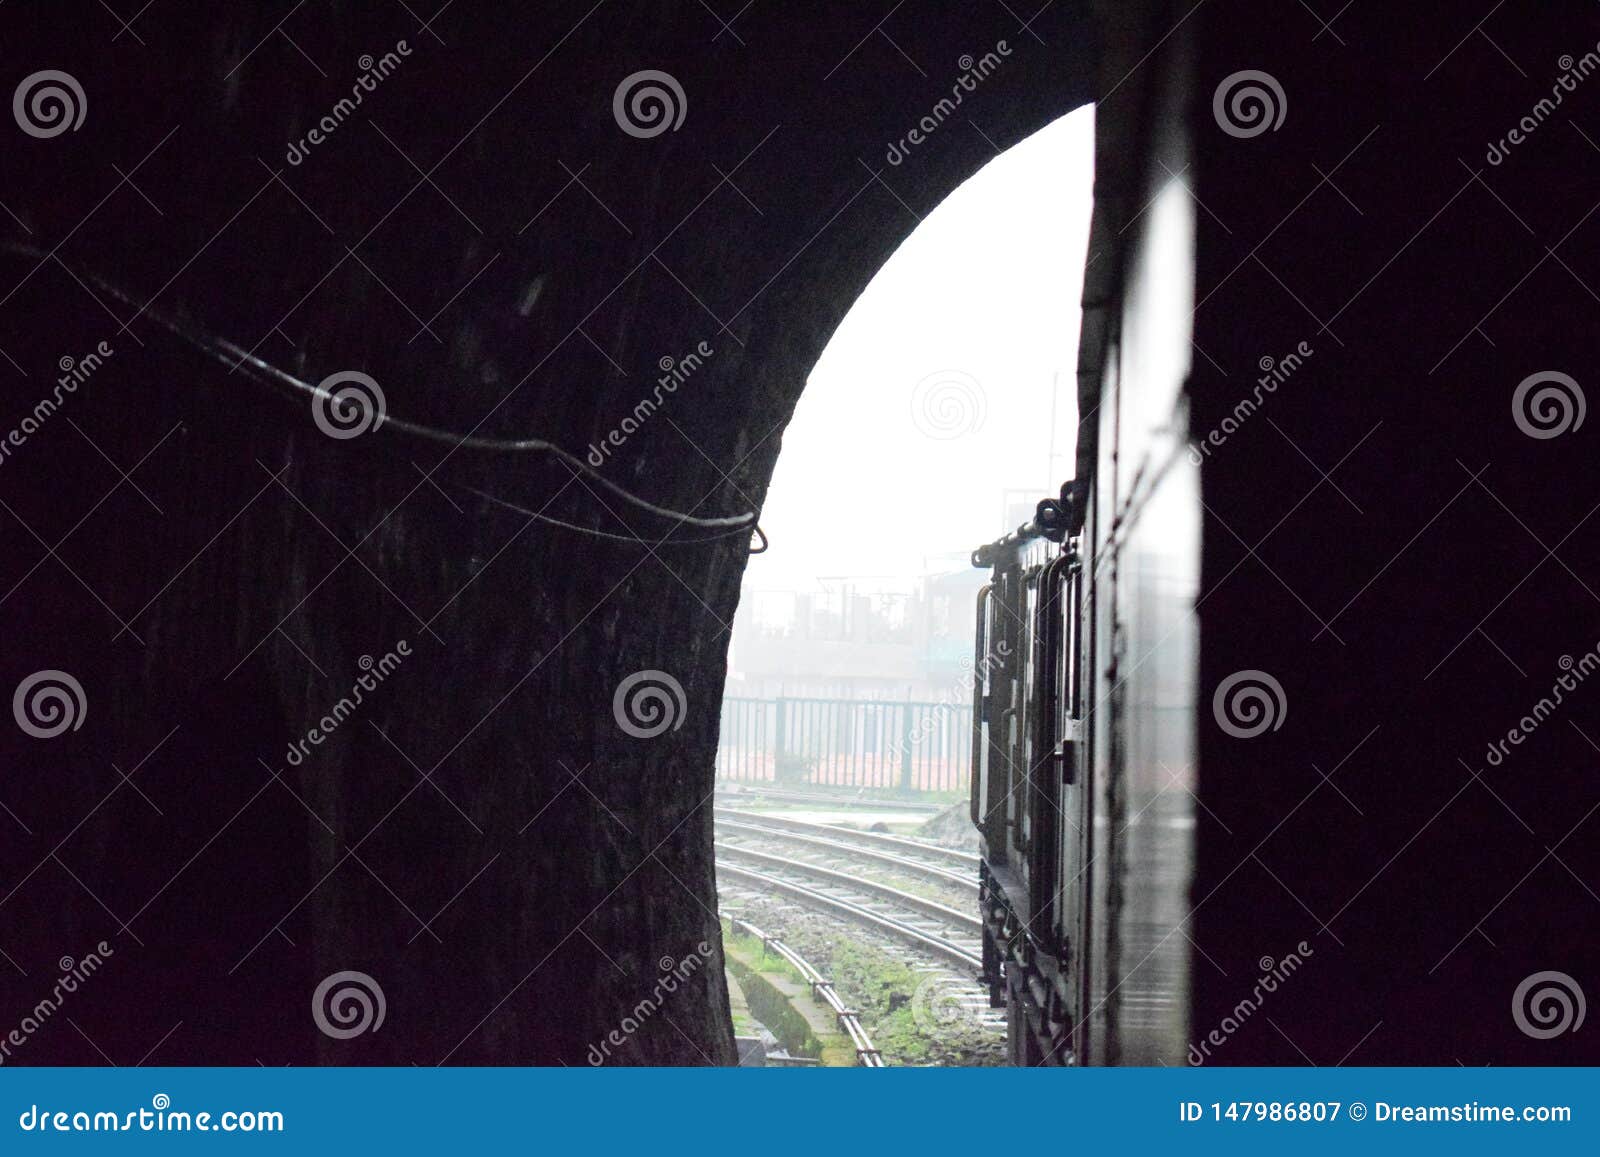 himalyan railway kalka shimla in india